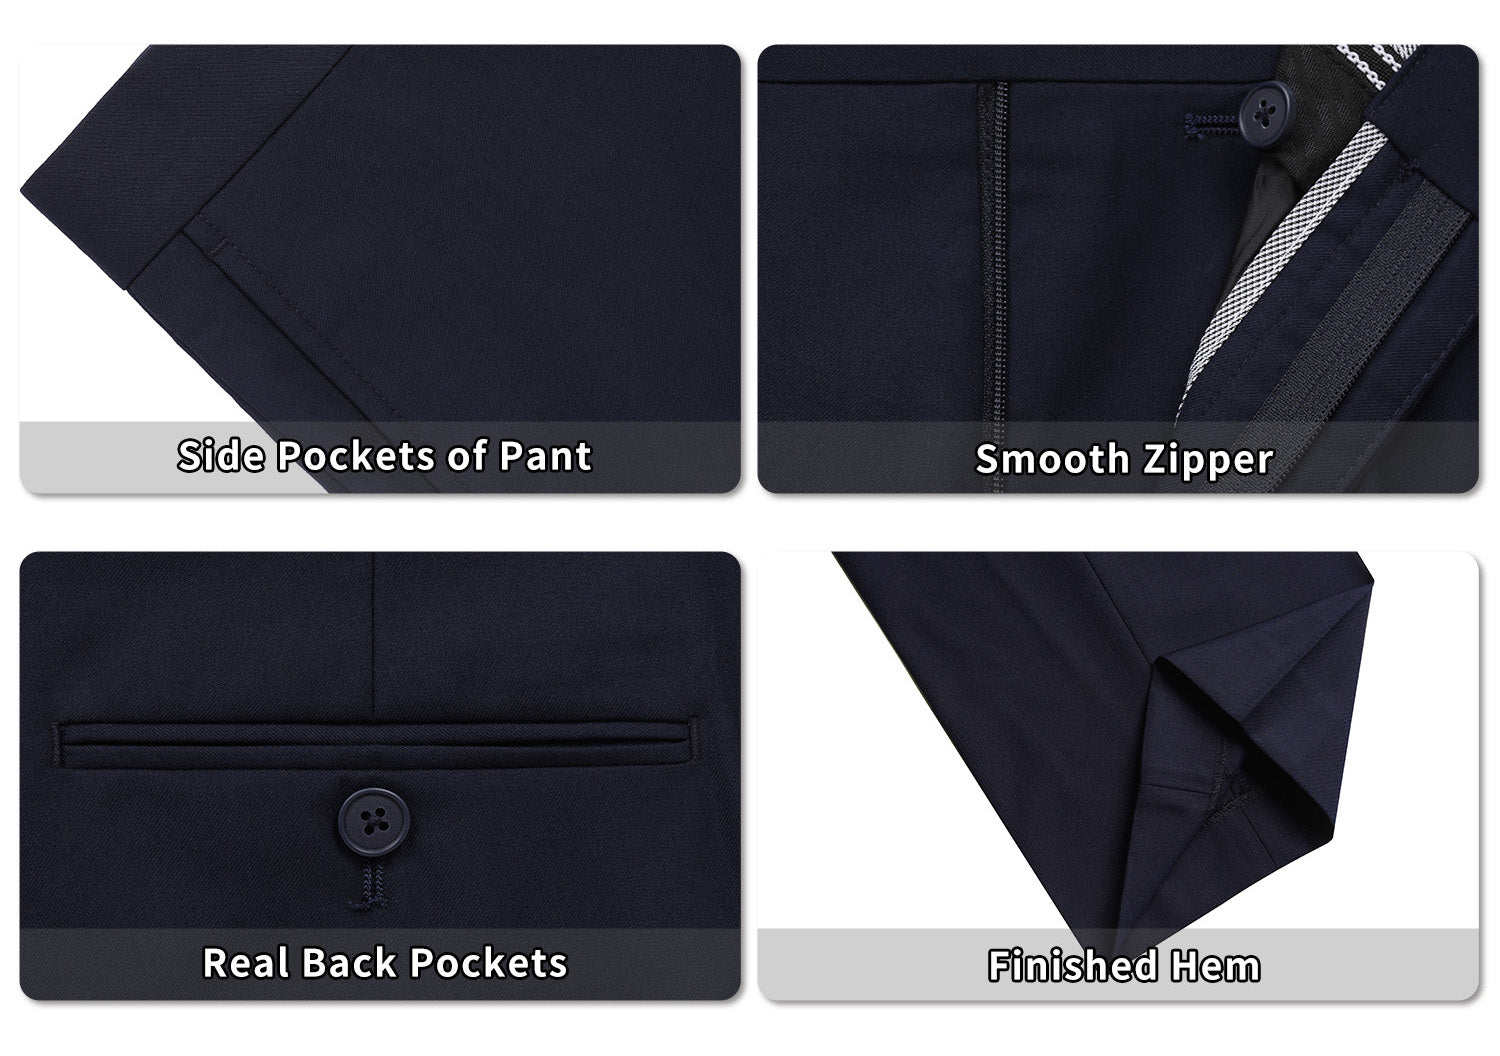 P&L Men's Premium Classic Fit Flat Front Suit Pants